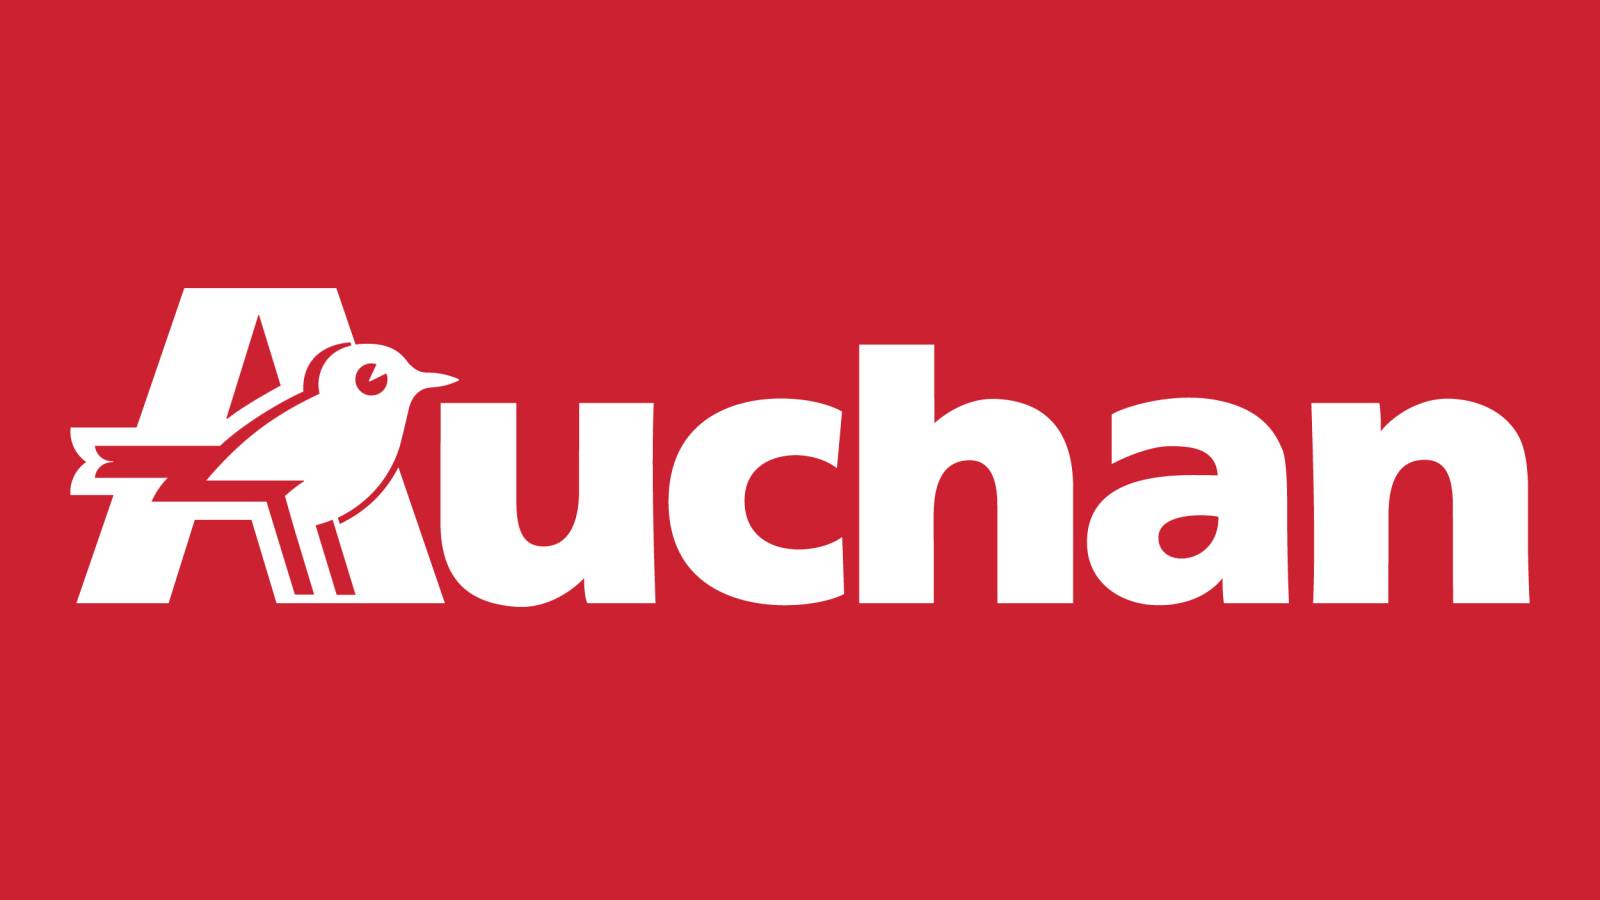 Auchan designs